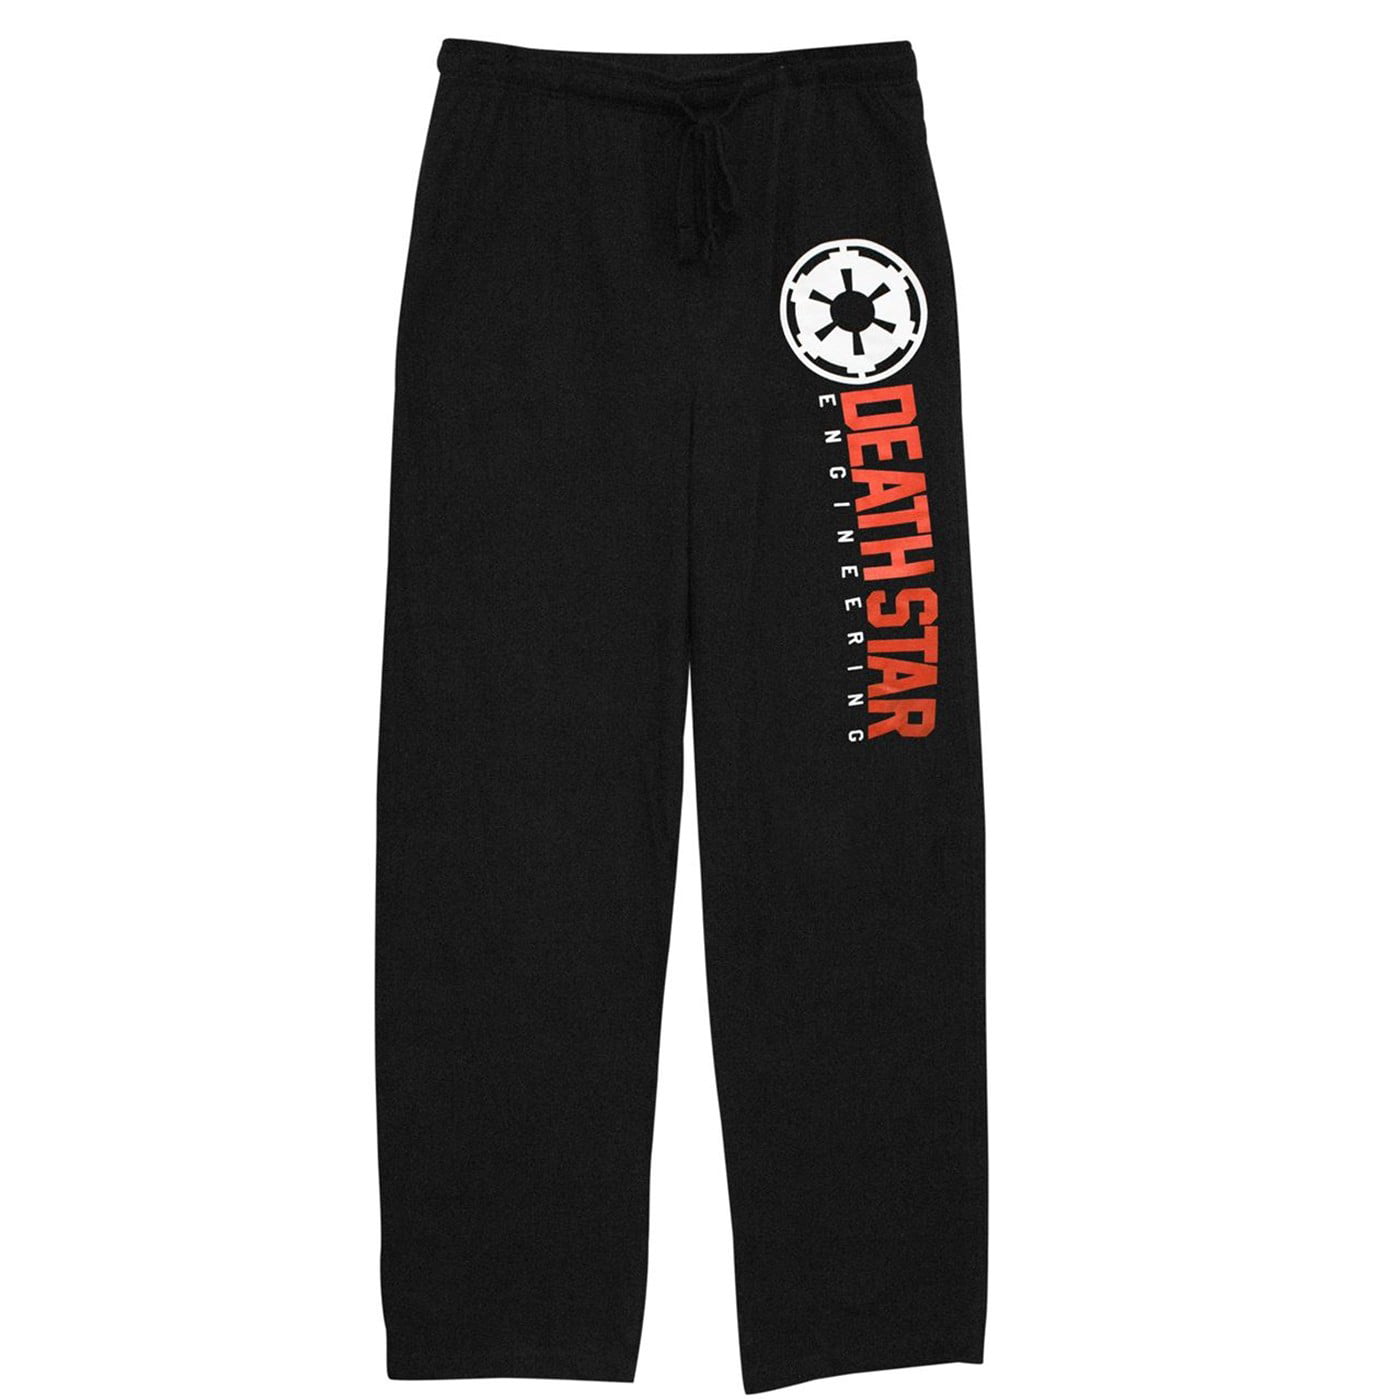 Star Wars Death Star Engineering Unisex Pajama Pants 